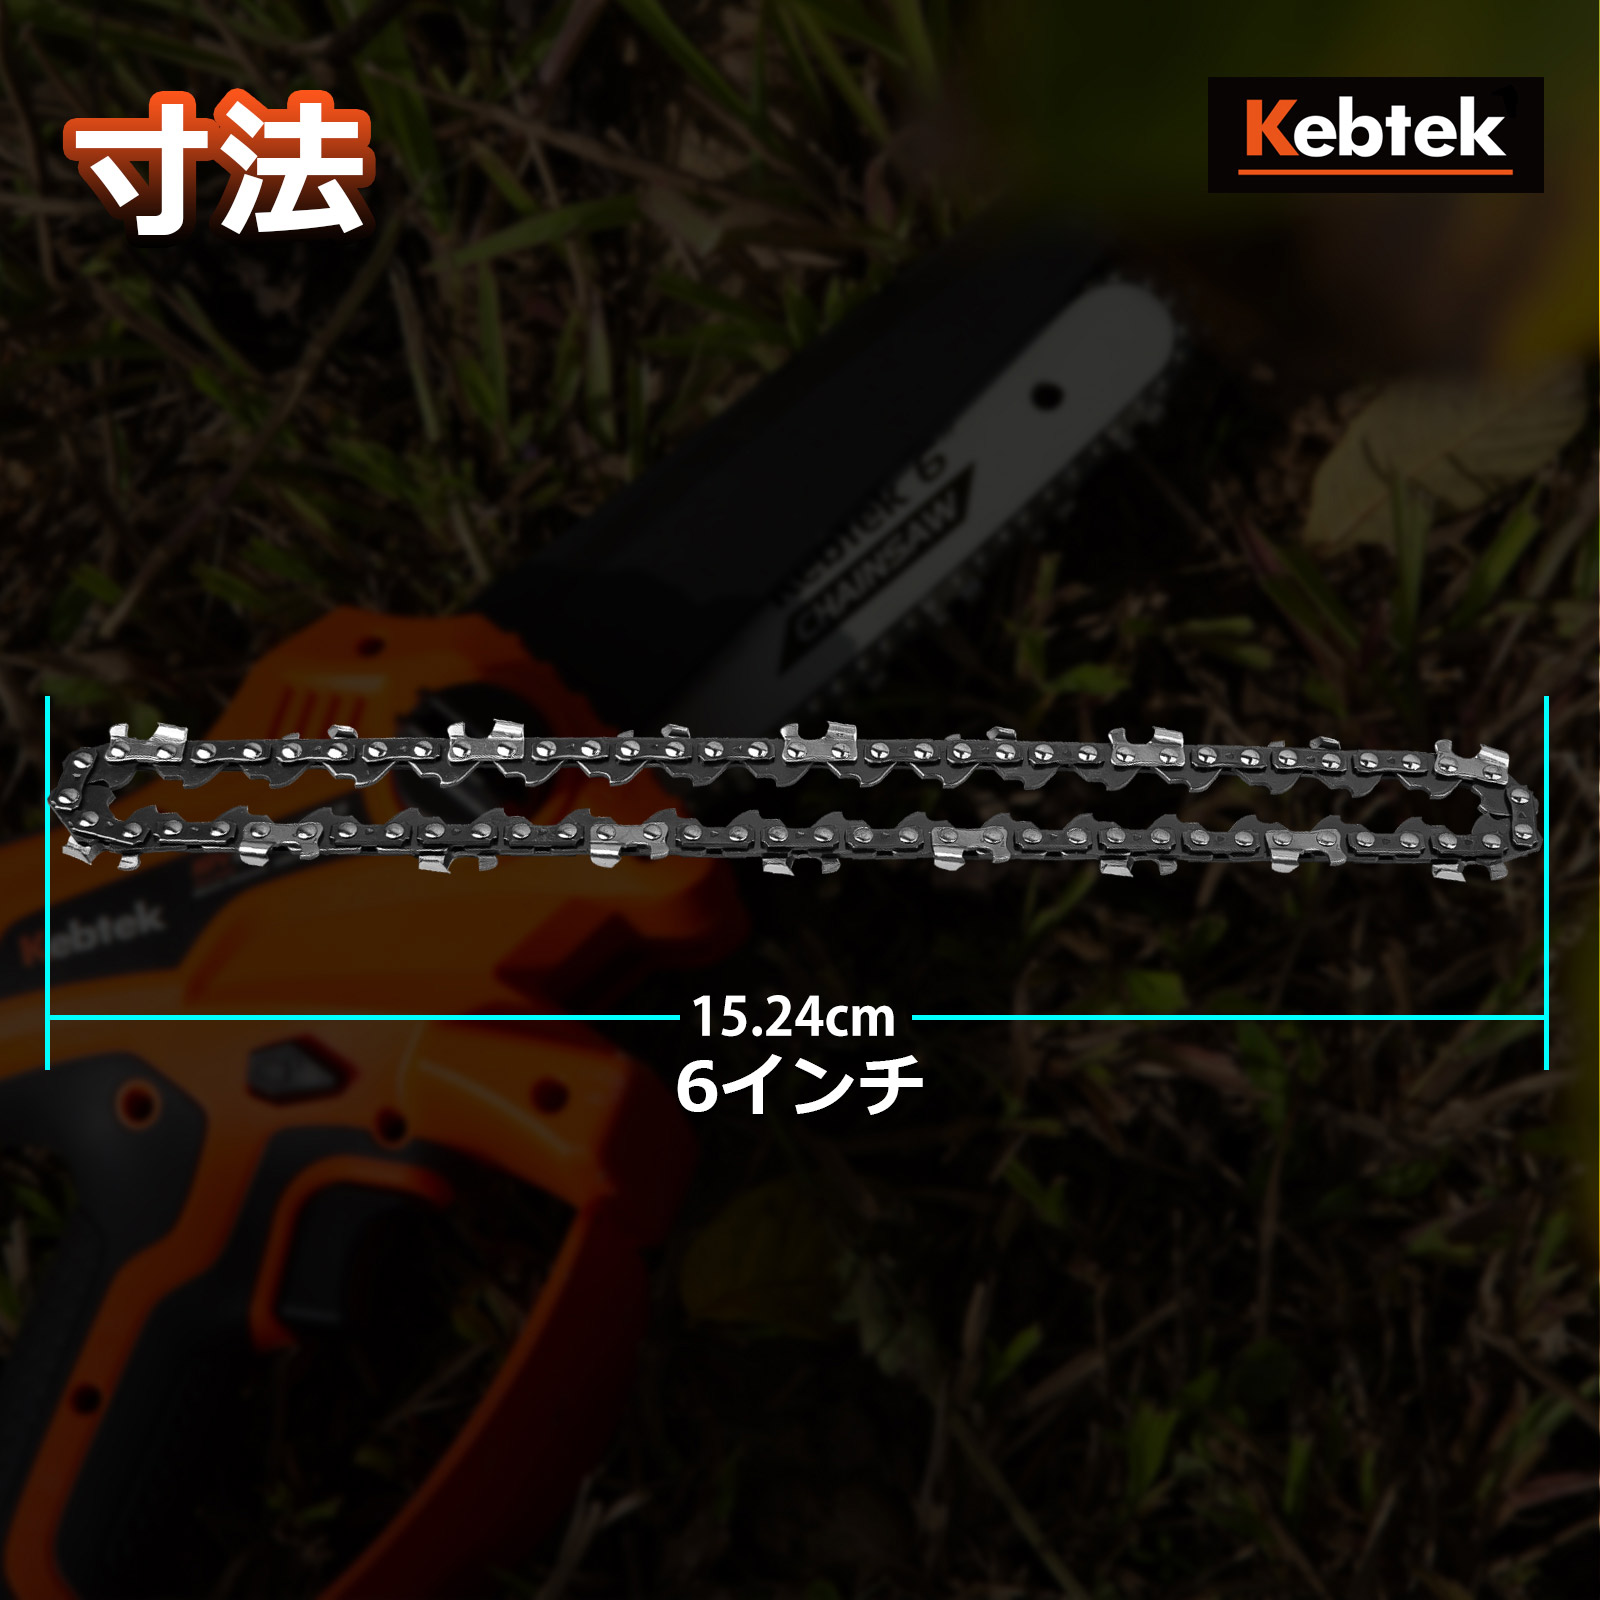 Kebtek 6インチ電動チェーンソー品番DLA-0017互換のチェーン